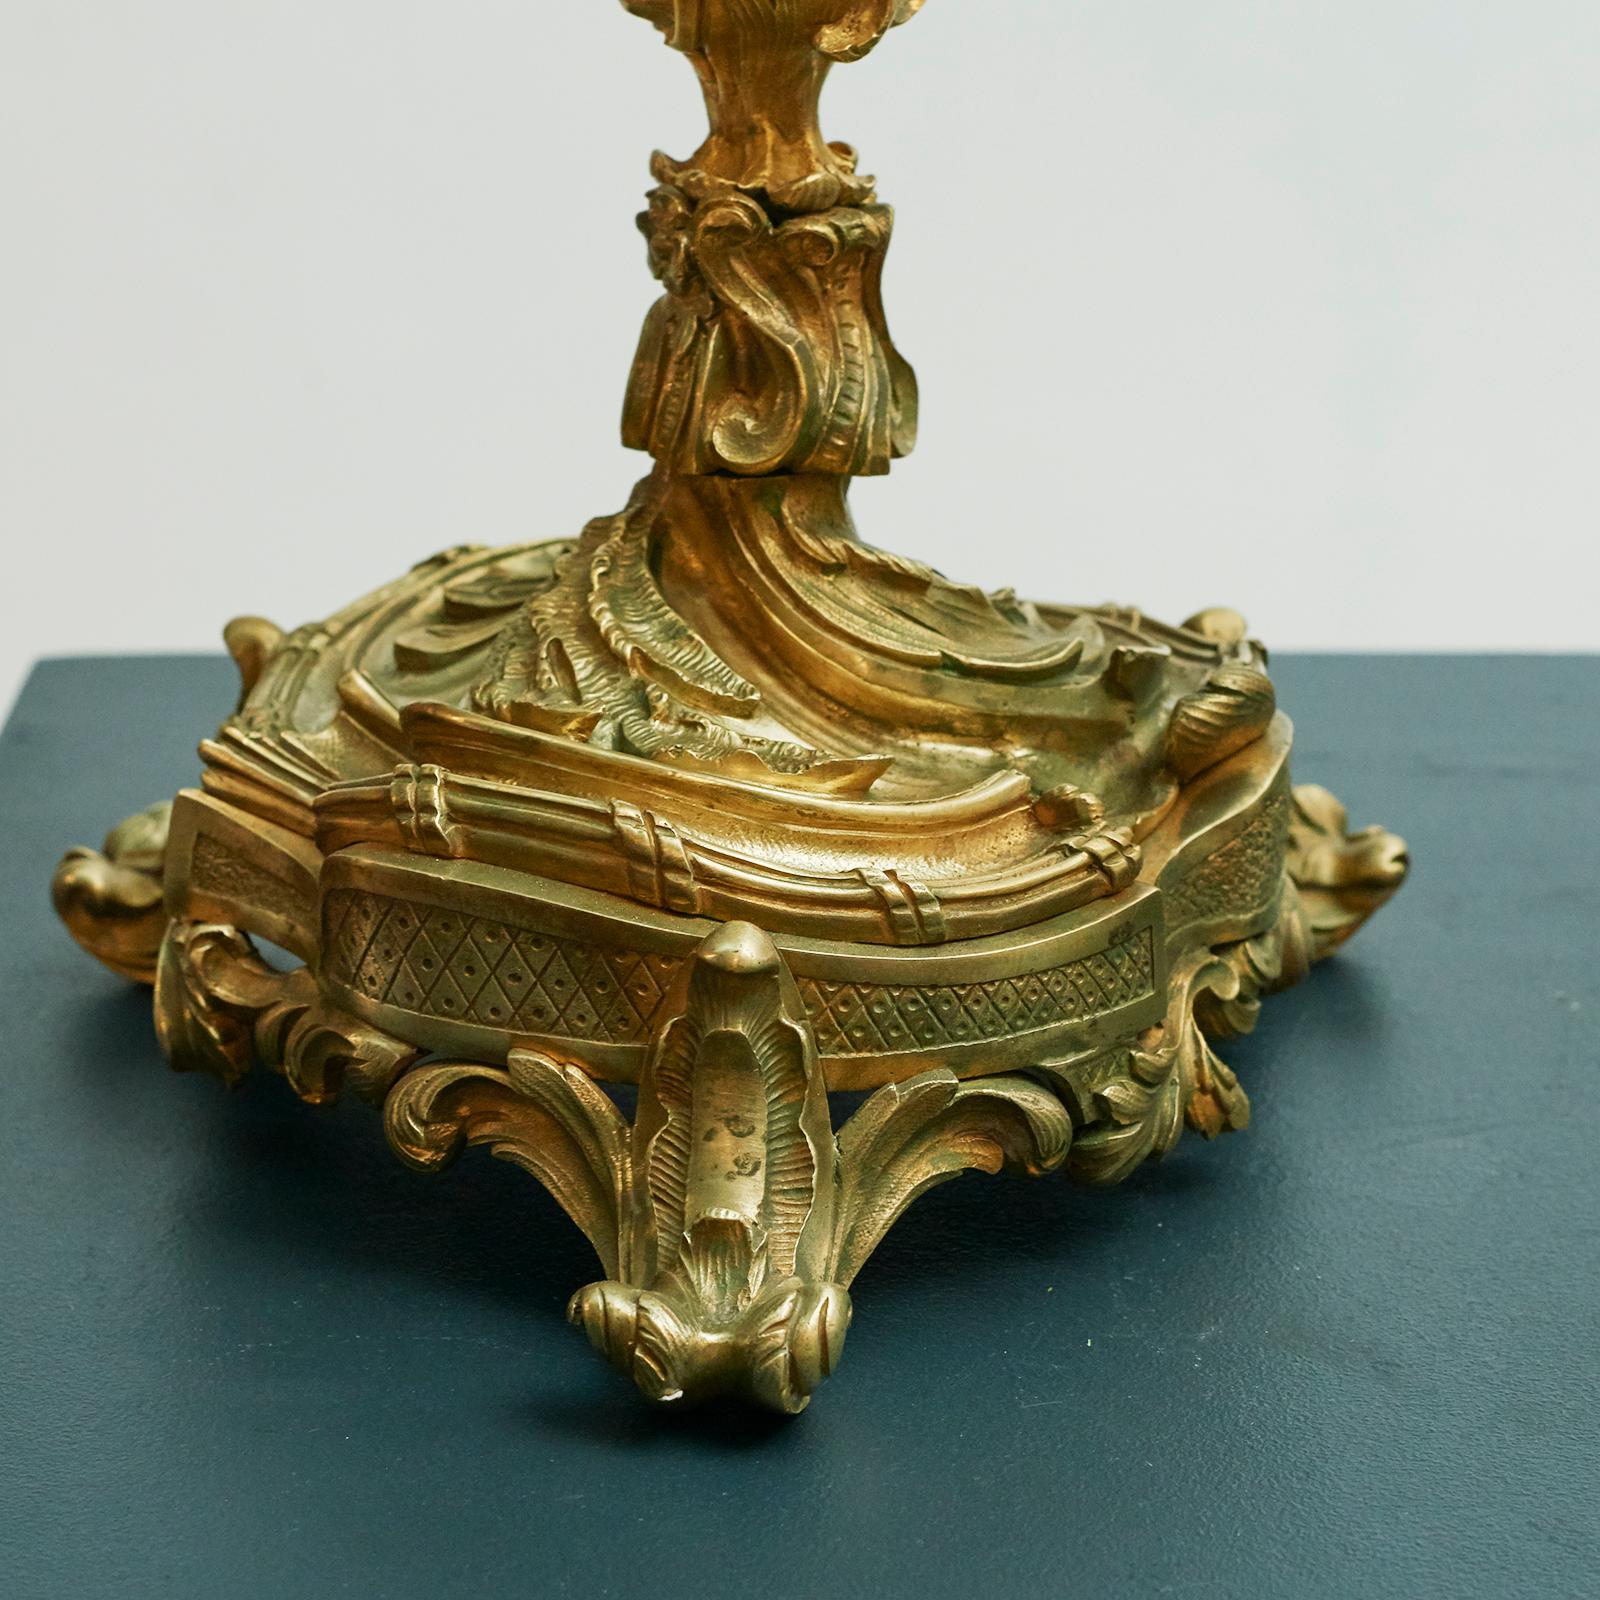 Paar neue Rokoko-Kandelaber aus vergoldeter Bronze mit 5 Armen,
Frankreich, um 1860.
Verkauft als Paar.